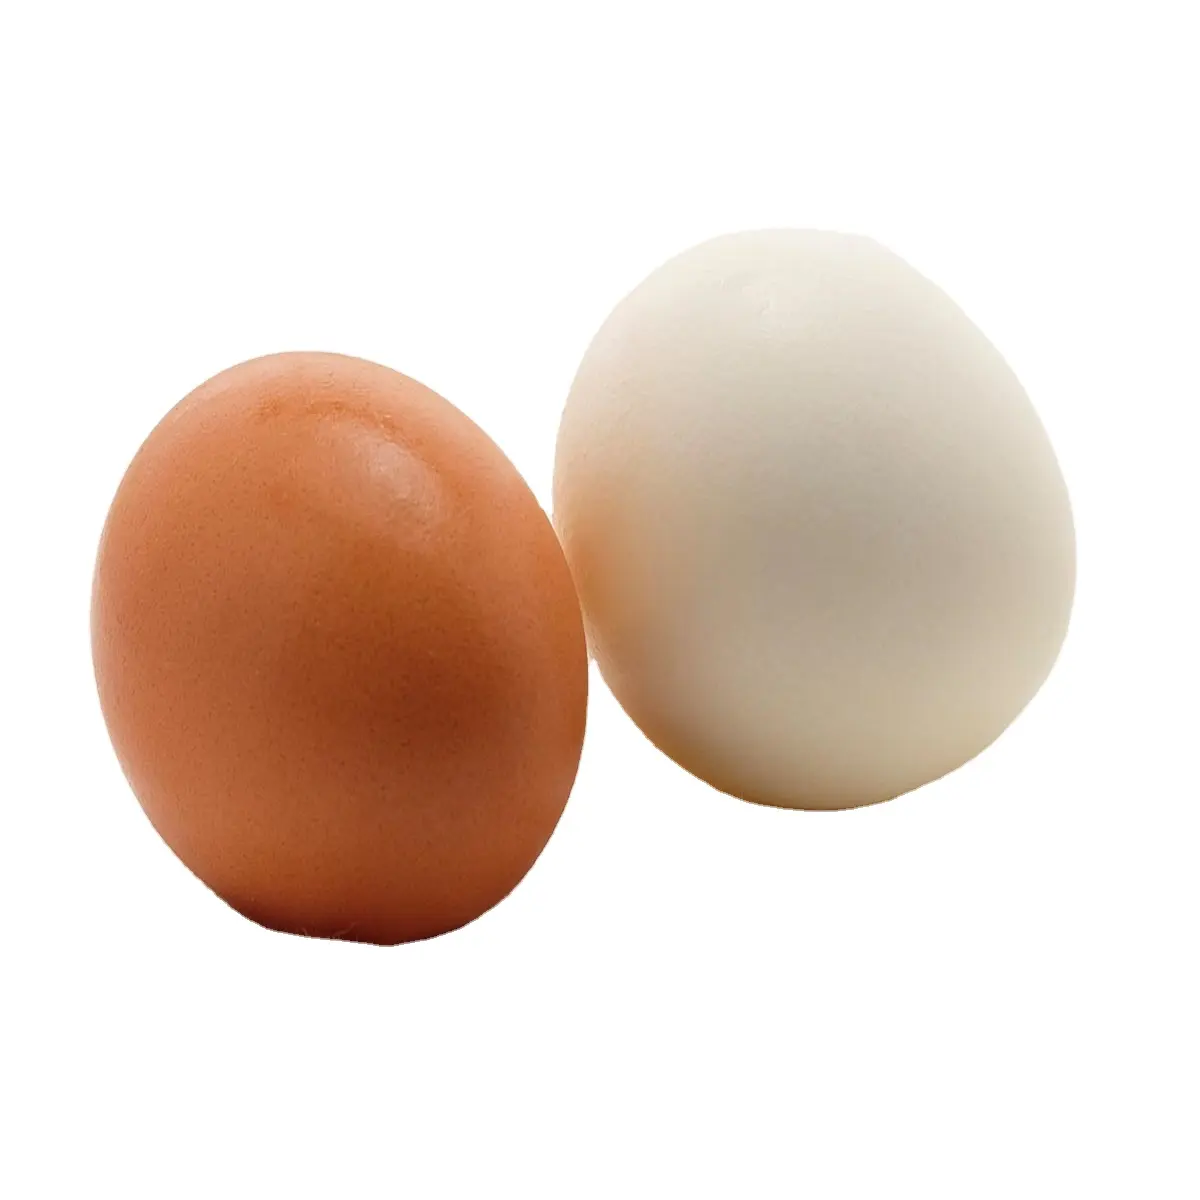 Dijual Telur Ayam Peternakan Coklat Putih Cina/Telur Meja Coklat dan Putih Cangkang Telur Ayam